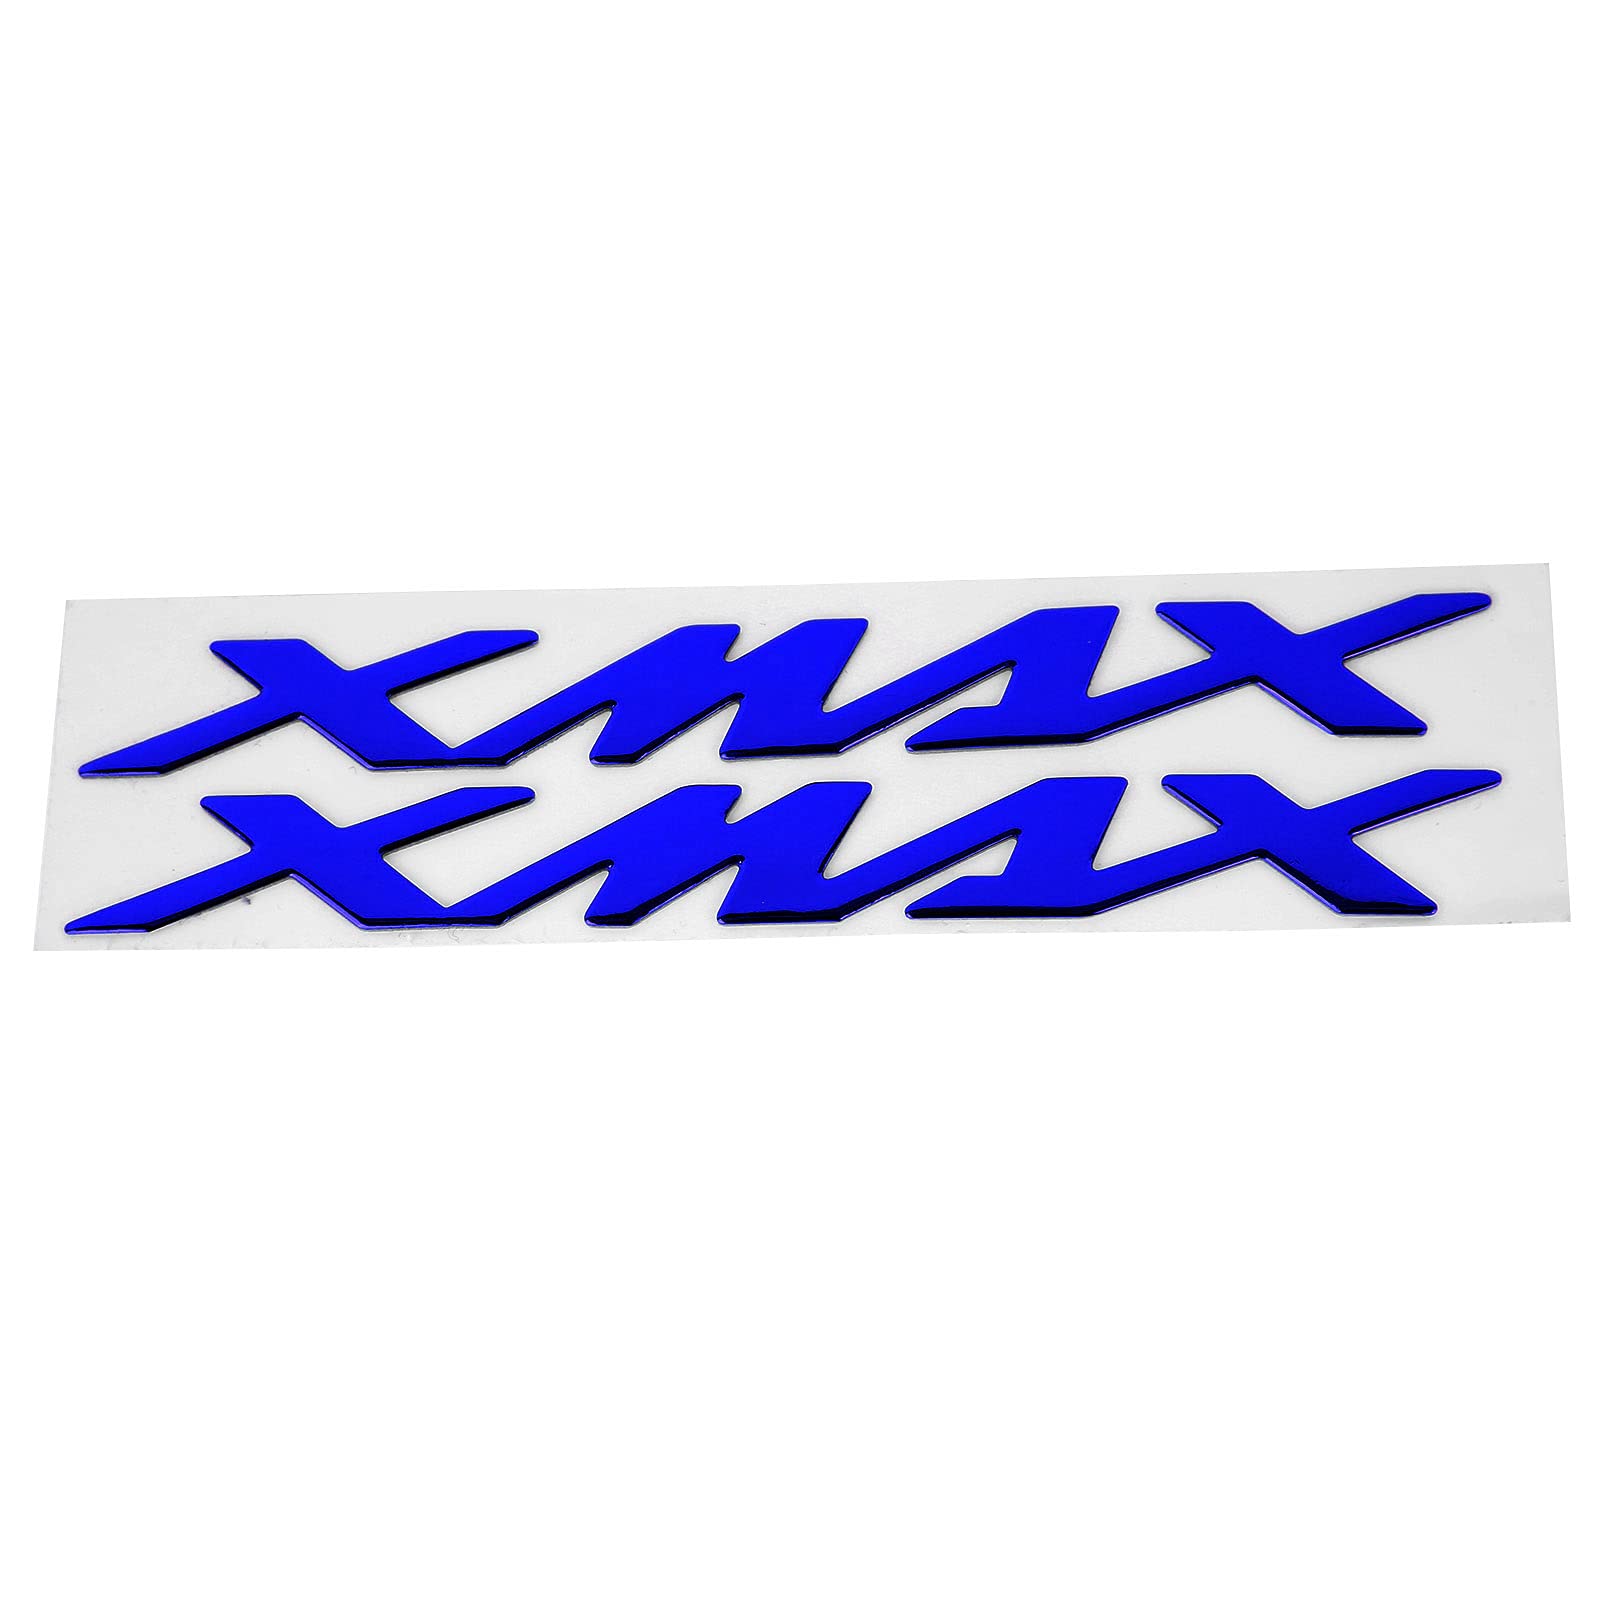 3D-Emblem-Aufkleber-Aufkleber Motorrad-Abzeichen Fahrzeugdekoration Paar Motorrad-Emblem-Aufkleber 3-dimensionale Aufkleber für X-MAX XMAX 125 250 400(Blau) von Ymiko